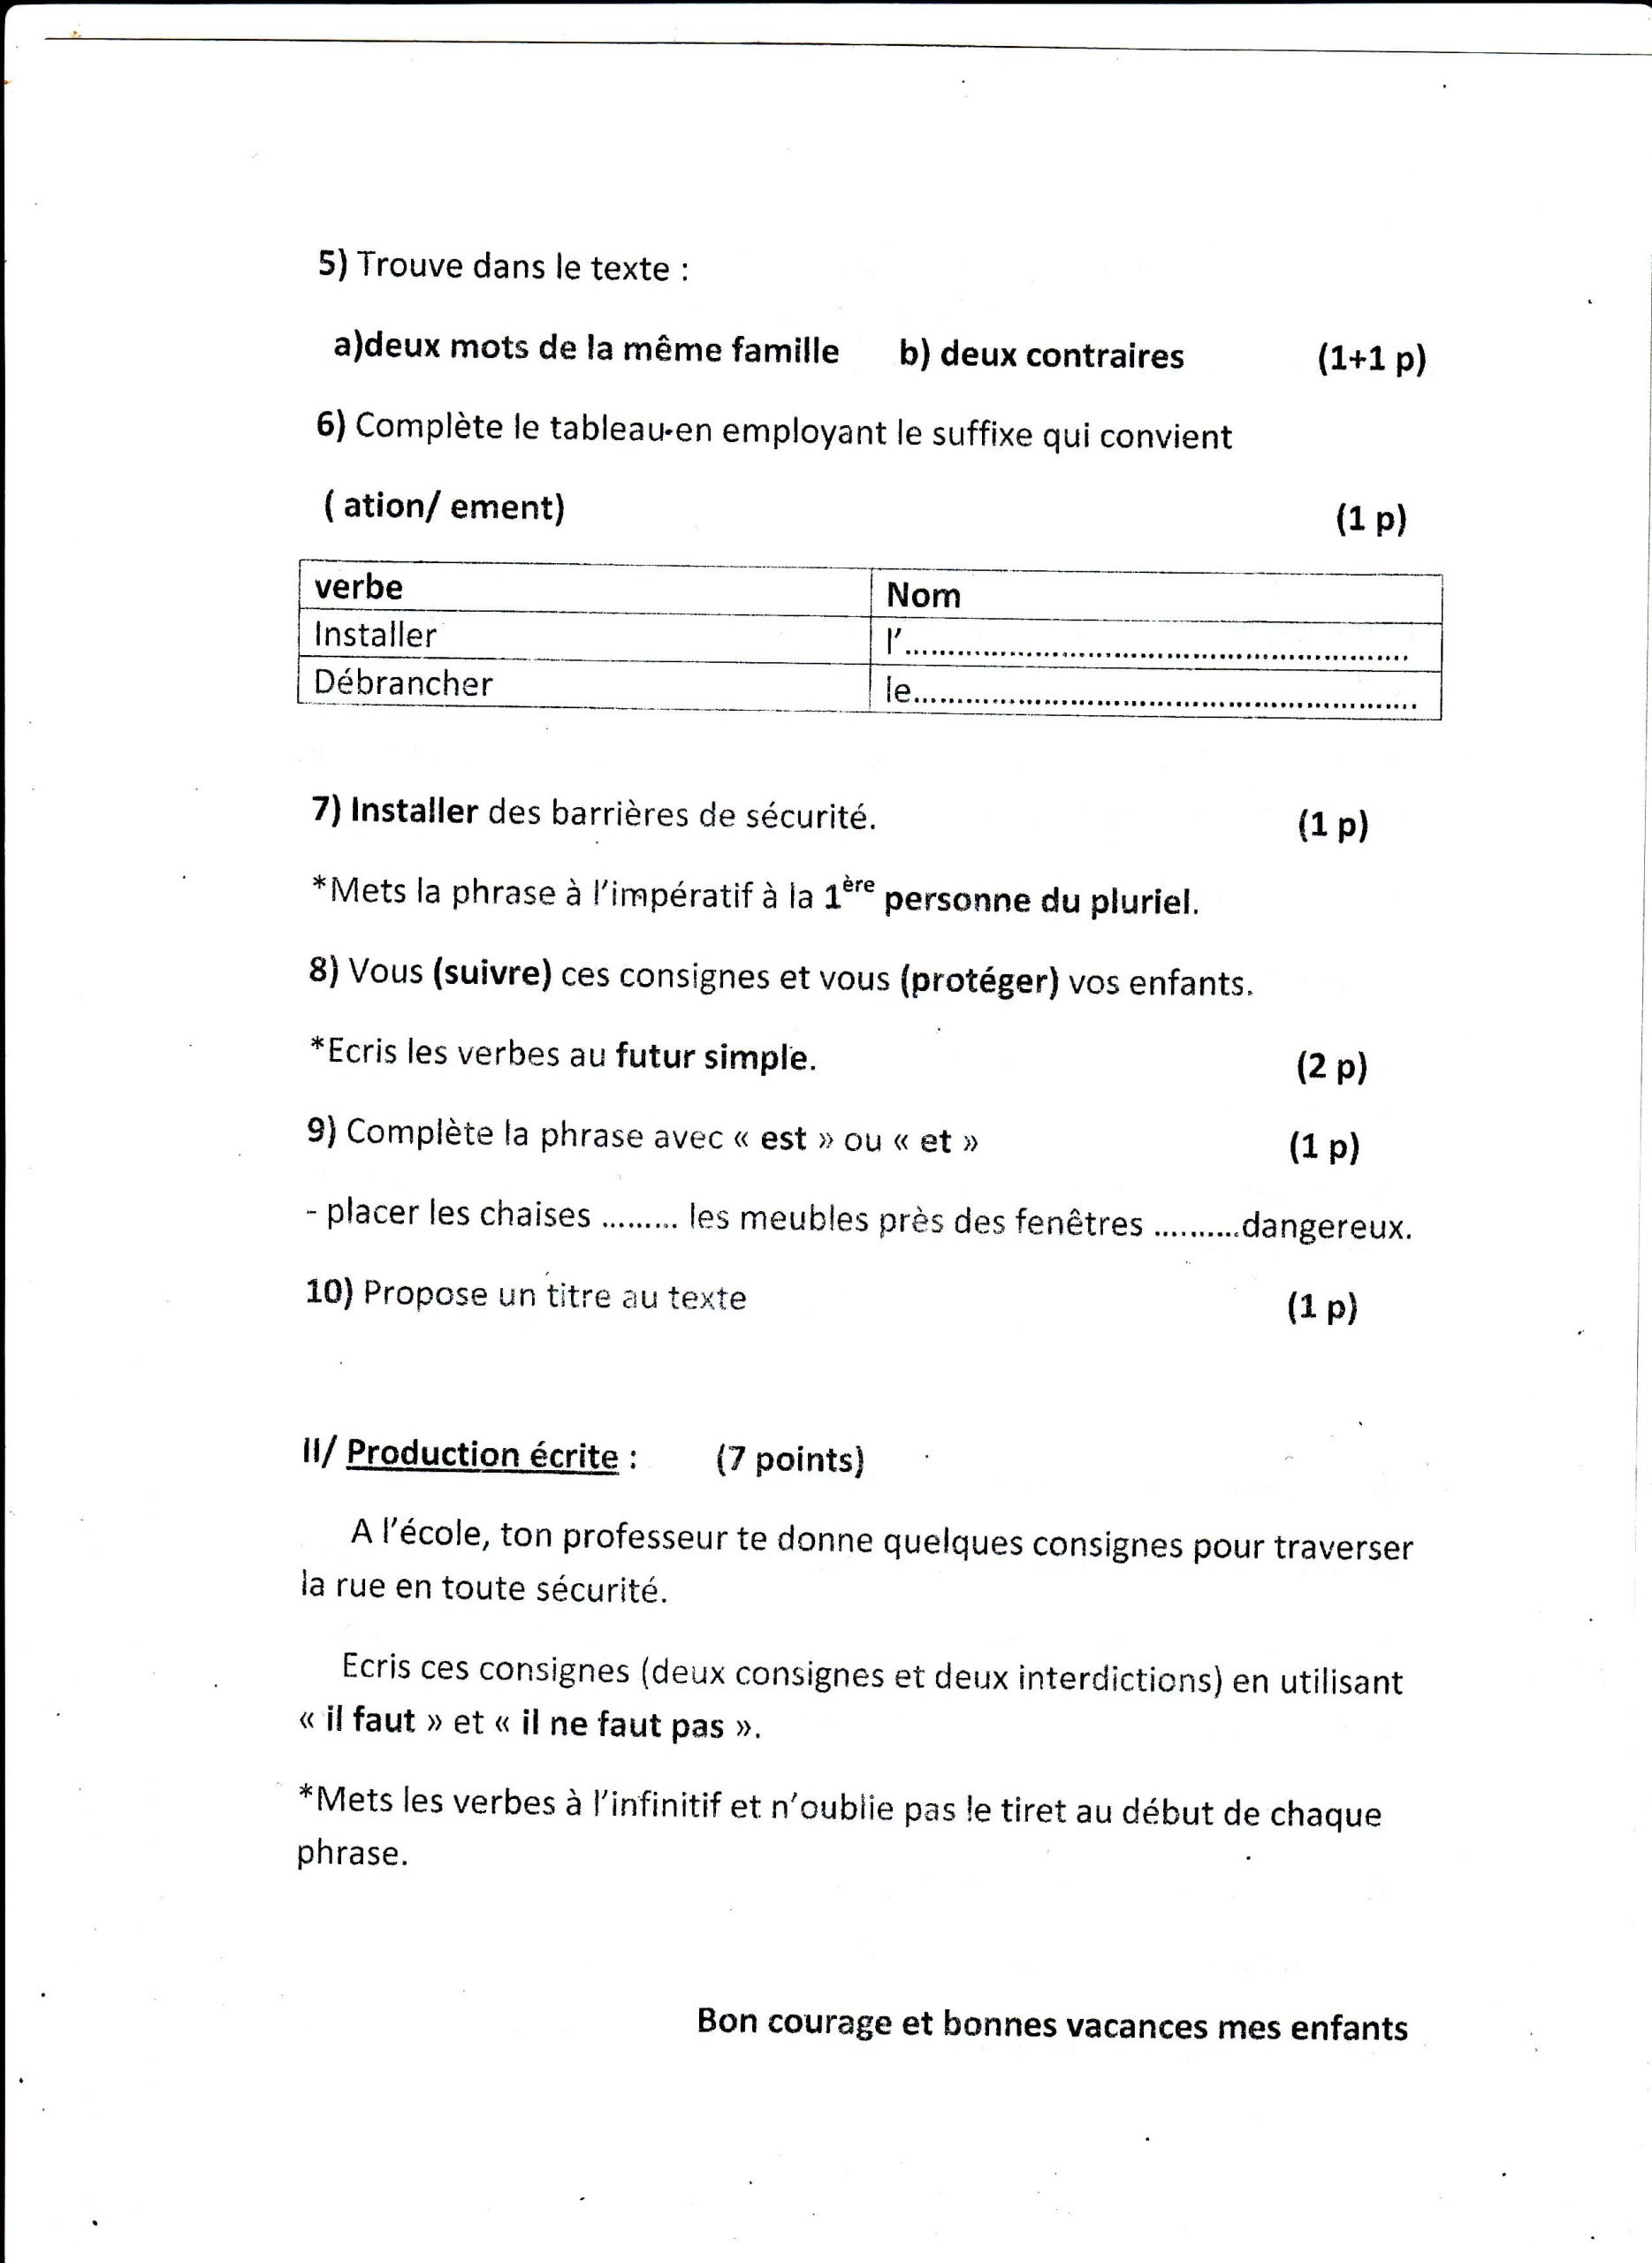 اختبار الفصل الثالث في اللغة الفرنسية للسنة الأولى متوسط - الموضوع 02